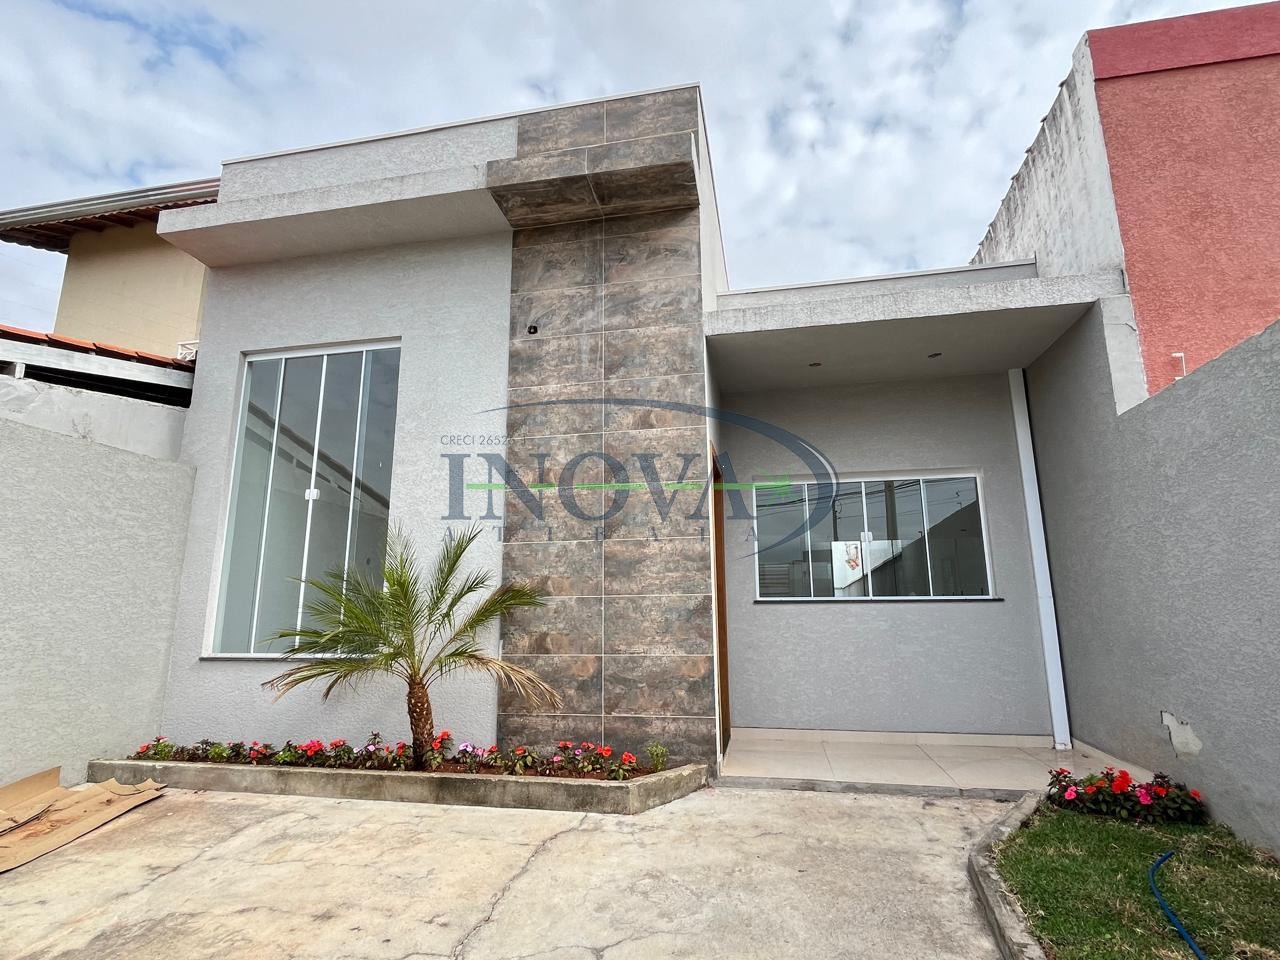 CA002346 | Casa venda Nova Atibaia | Atibaia/SP